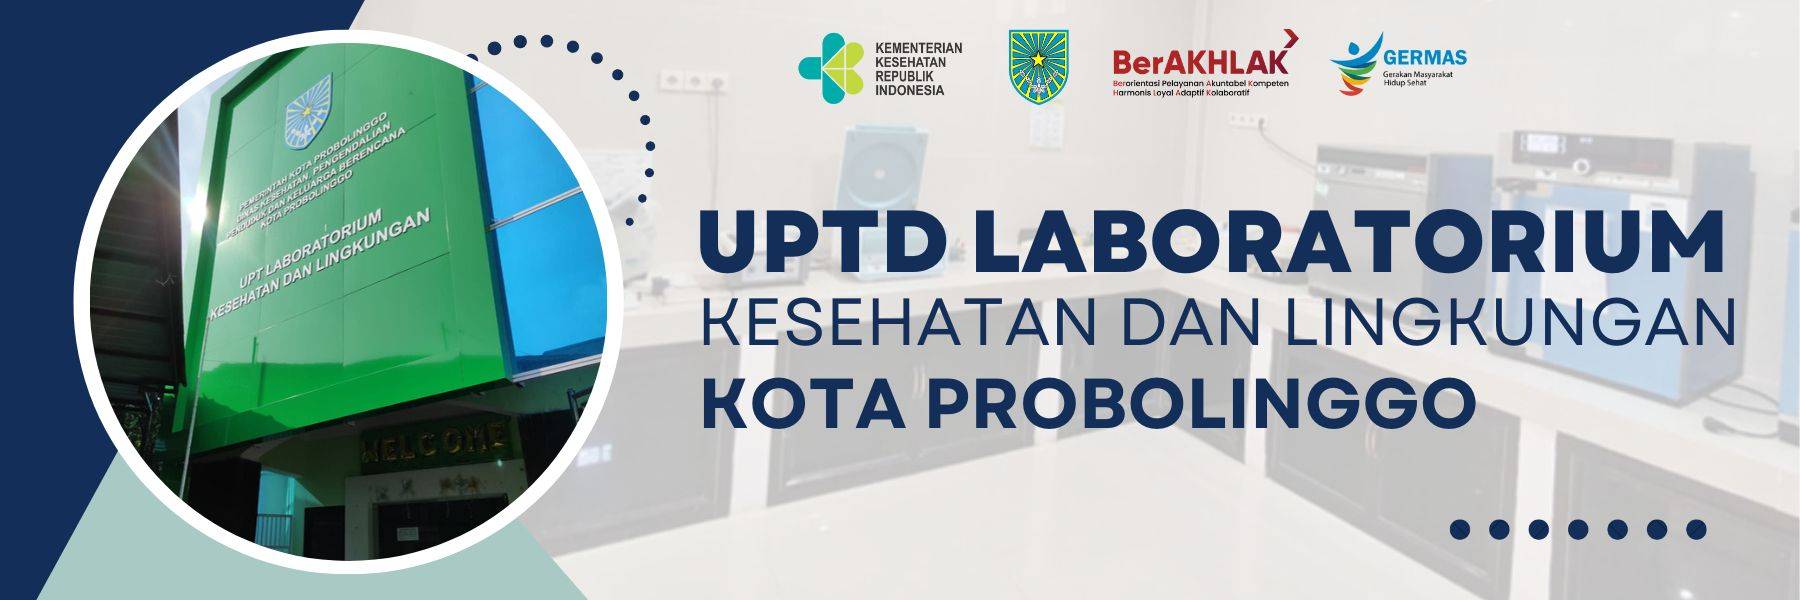 UPTD Laboratorium Kesehatan dan Lingkungan Kota Probolinggo